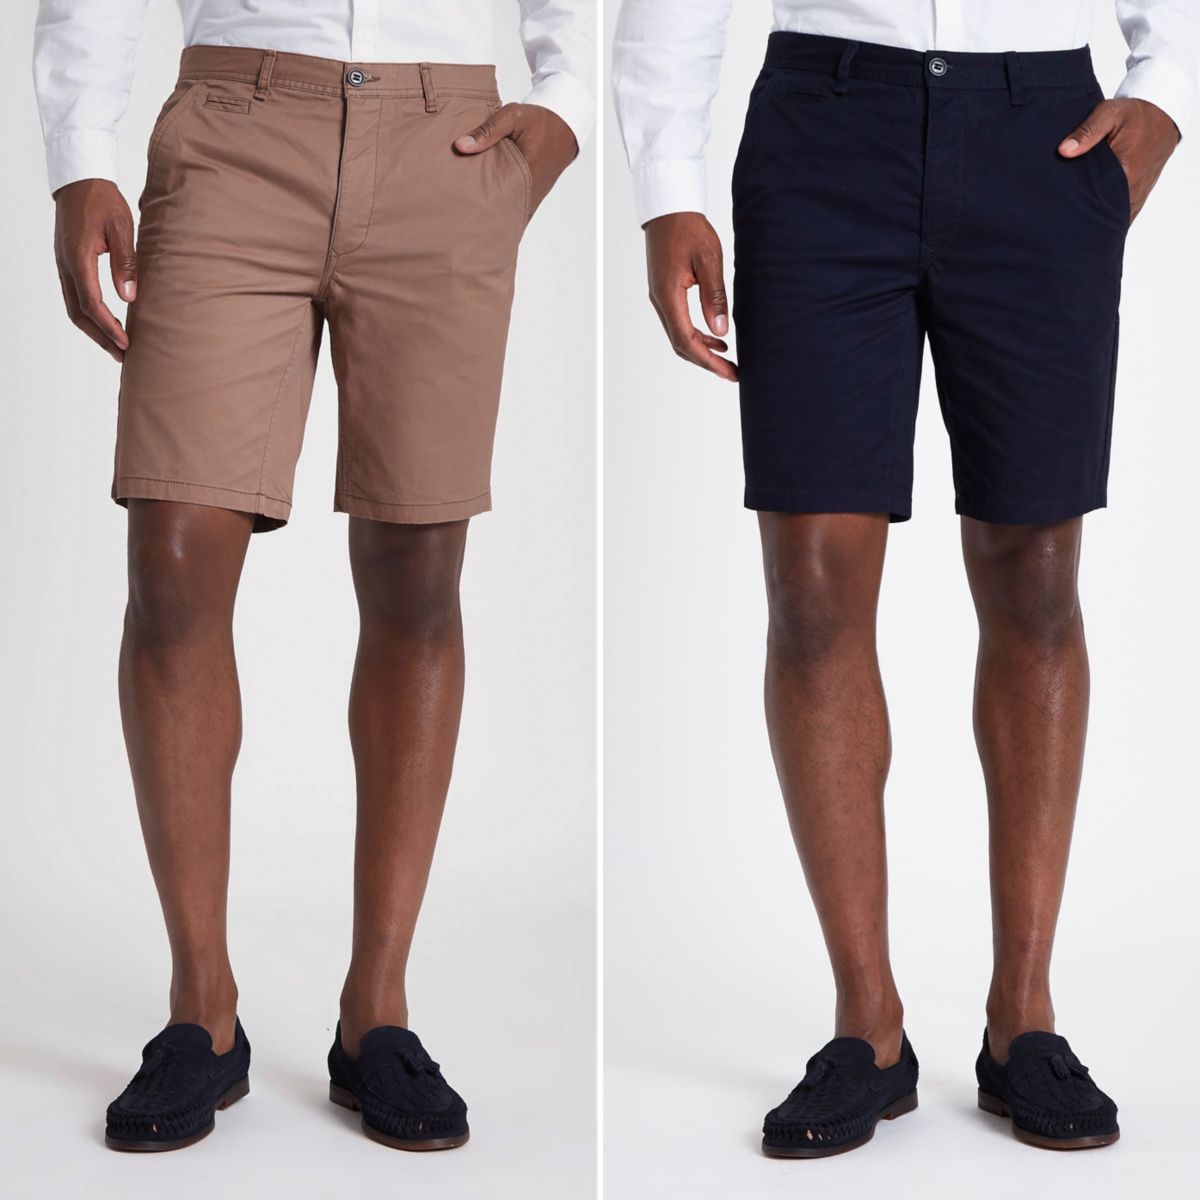 Navy and tan slim fit chino shorts multipack - Smart Shorts - Shorts - men